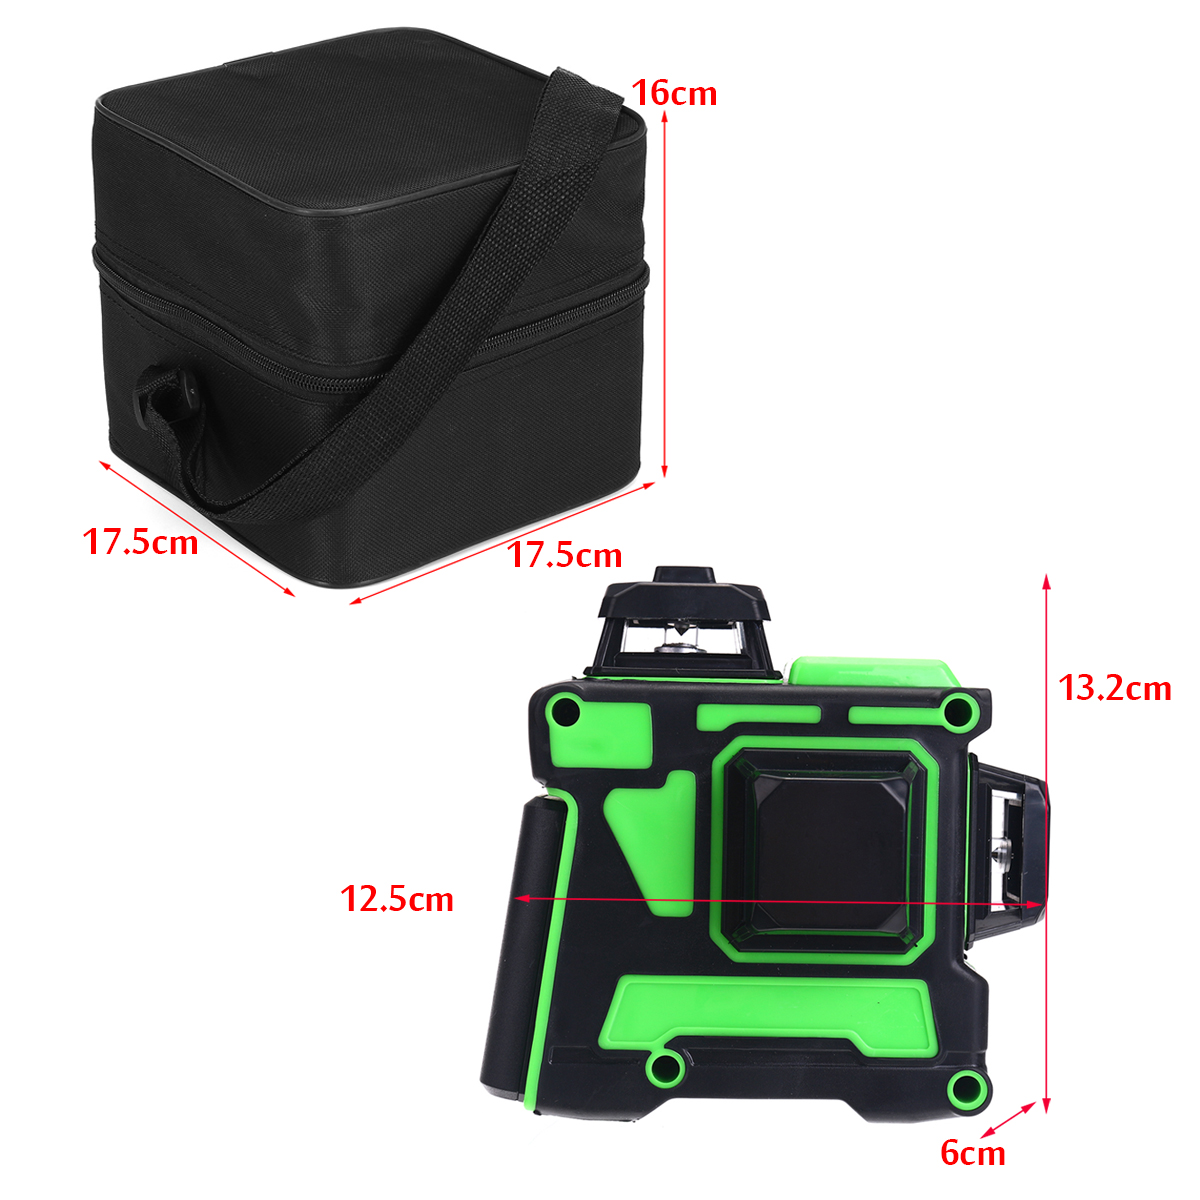 3D-12-Line-Green-Light-Laser-Level-Digital-Self-Leveling-360deg-Rotary-Measure-1665156-5